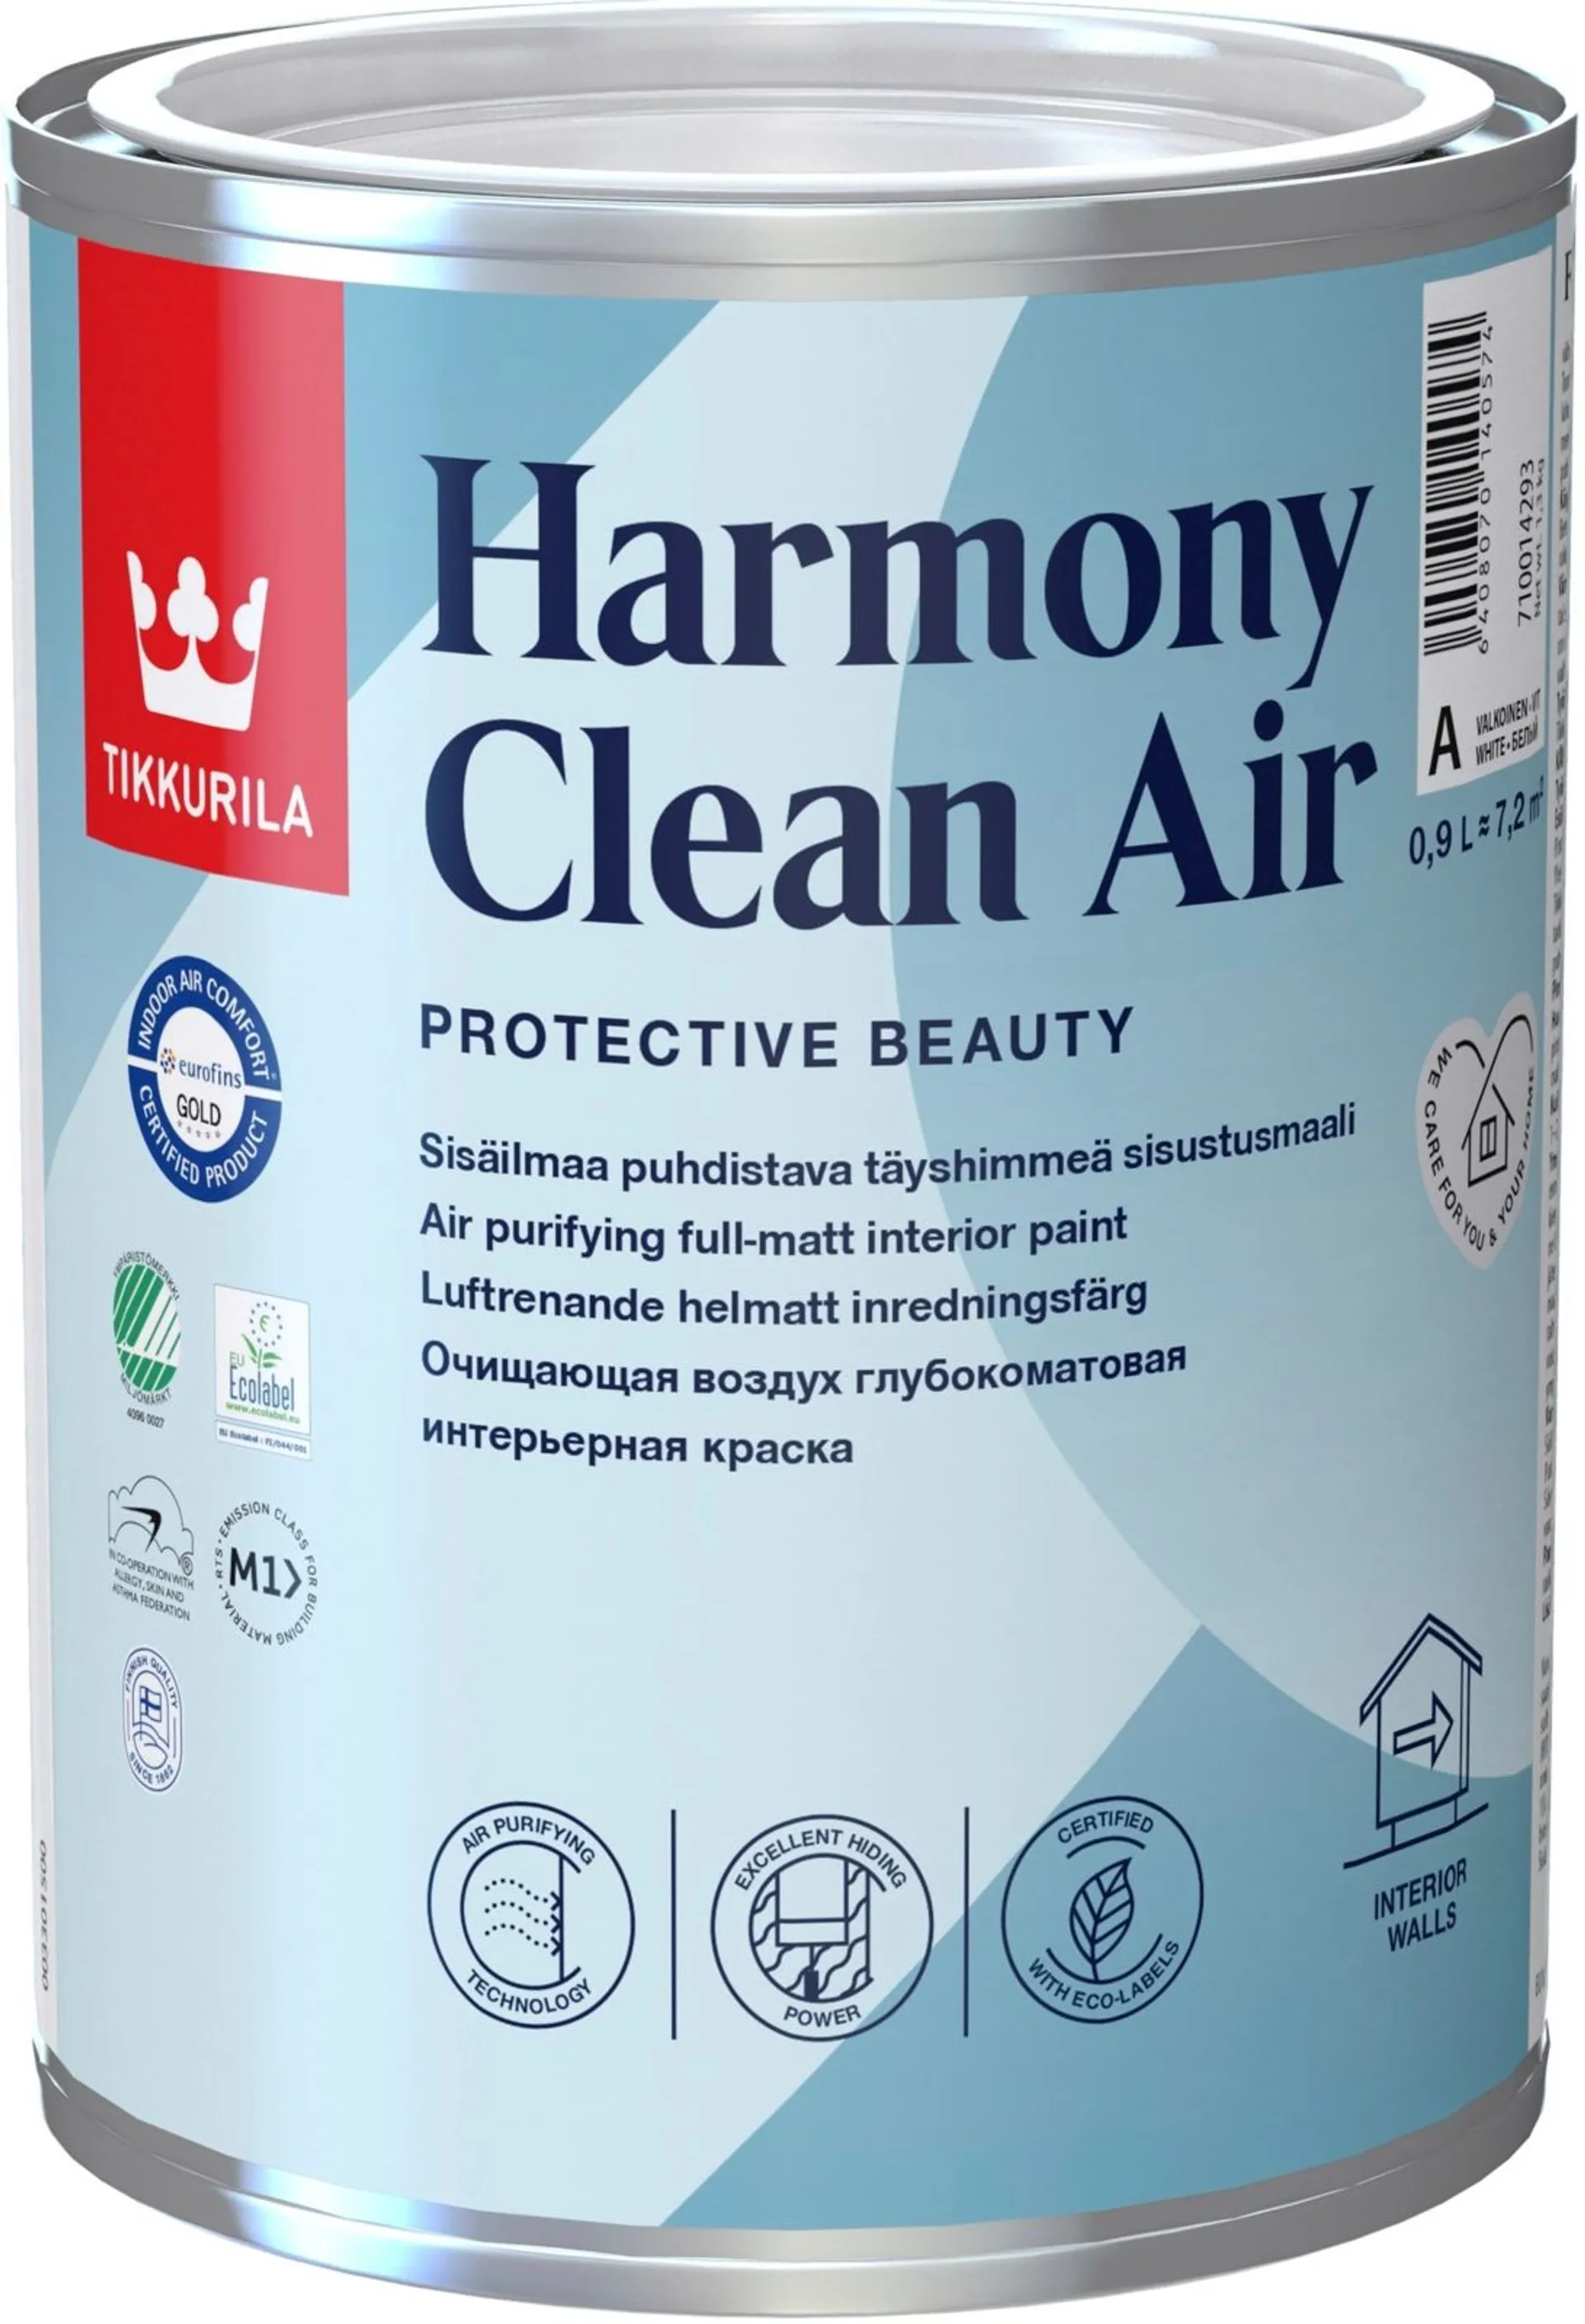 Tikkurila Harmony Clean Air sisustusmaali 0,9l C vain sävytykseen täyshimmeä